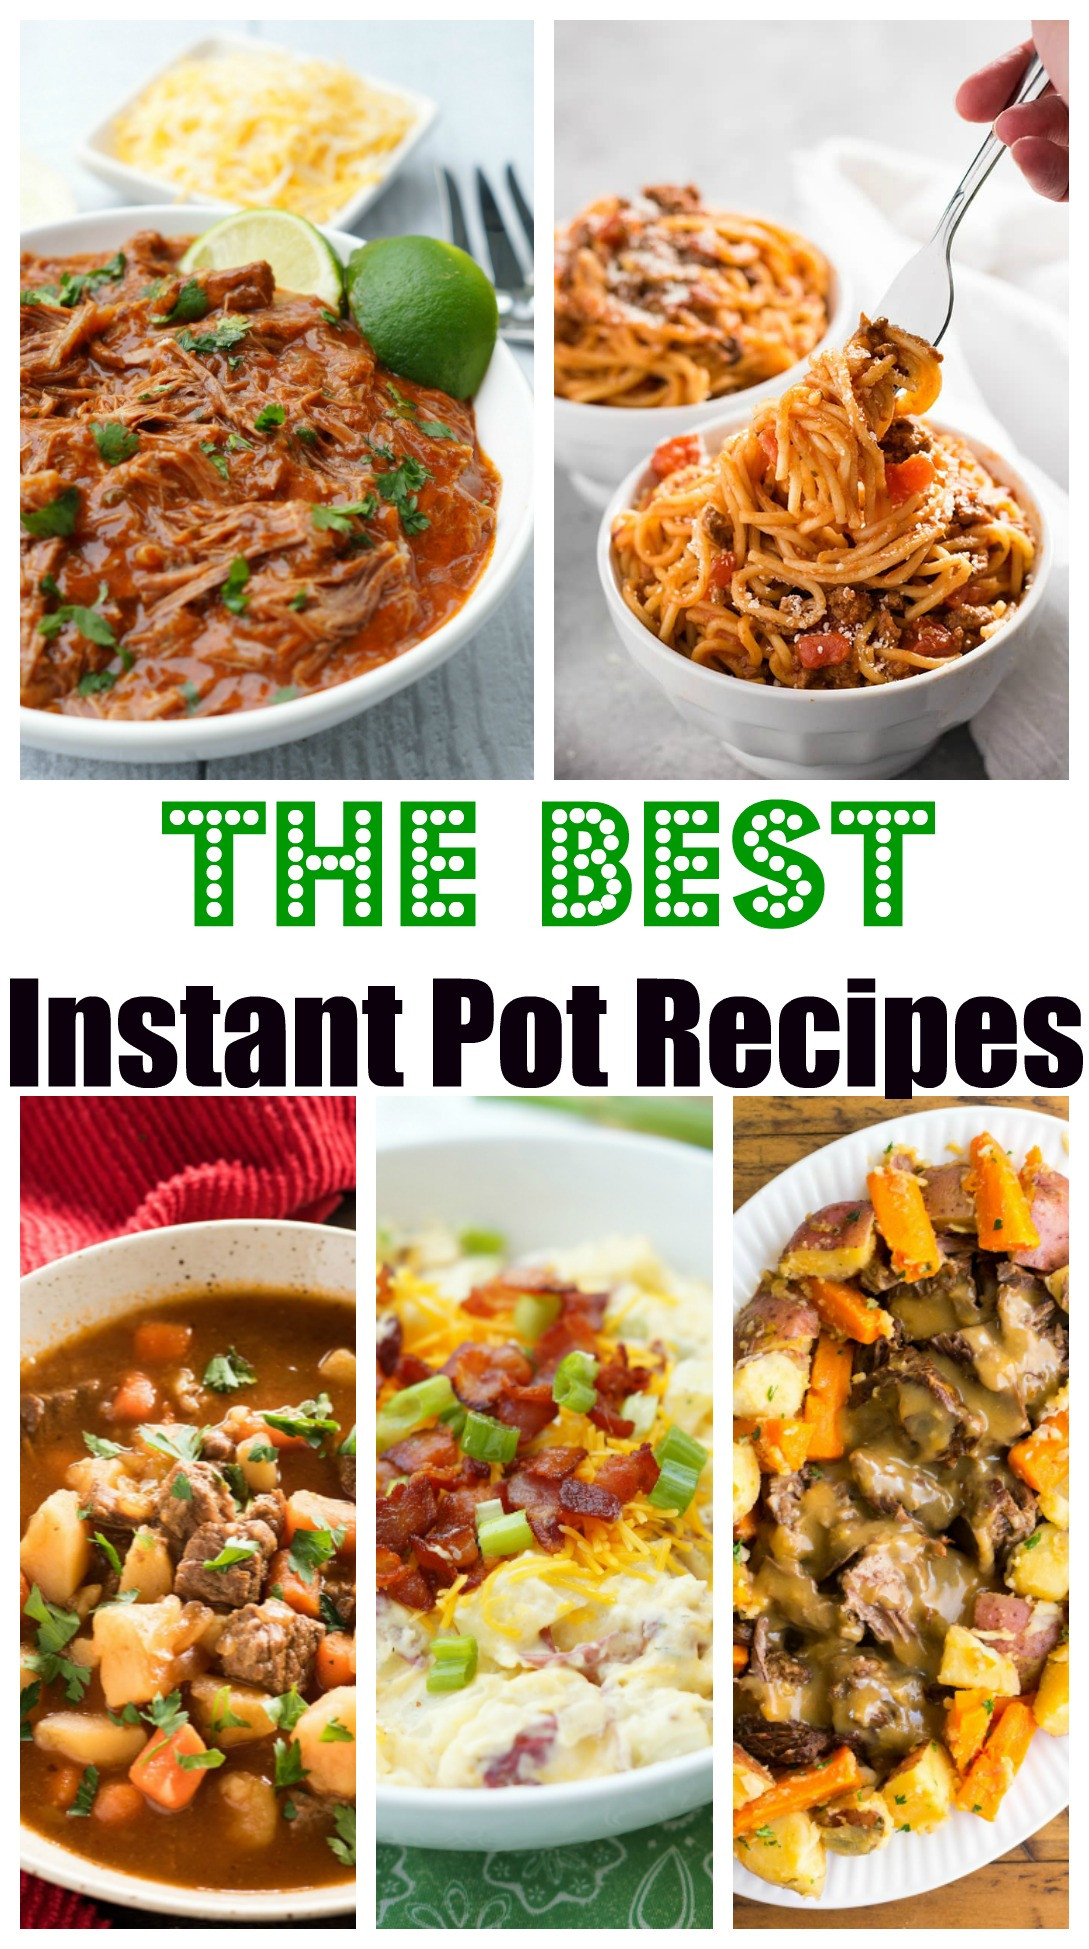 Instant Pot Holiday Recipes
 The Best Instant Pot Recipes